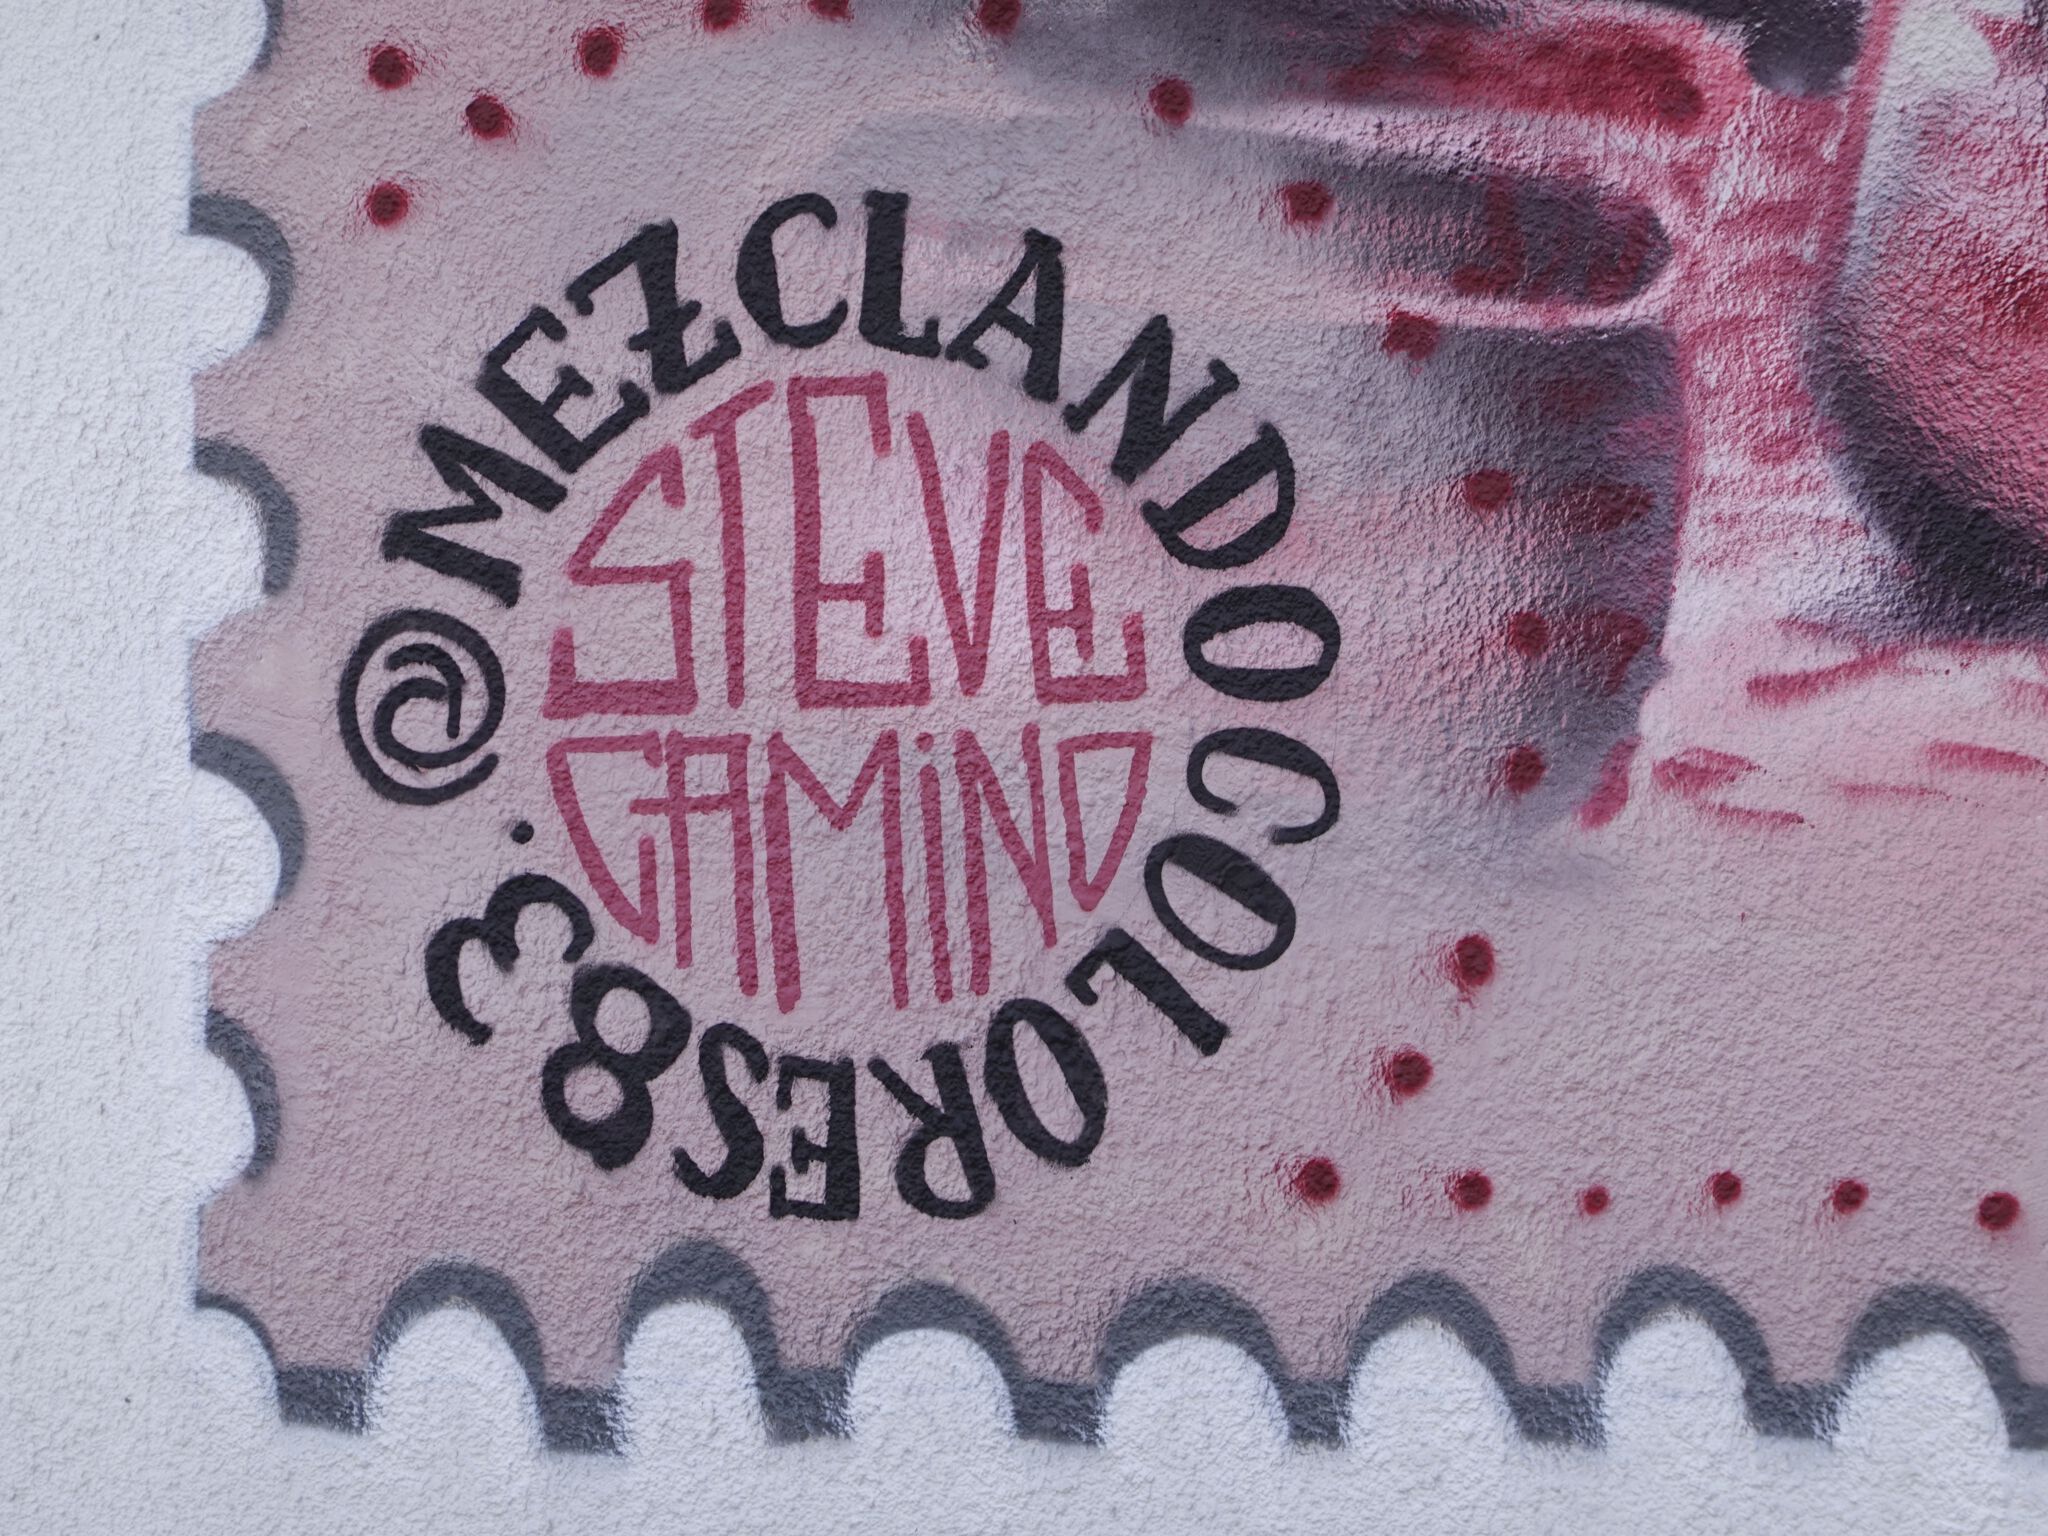 Steve Camino&mdash;Cantabria Stamp